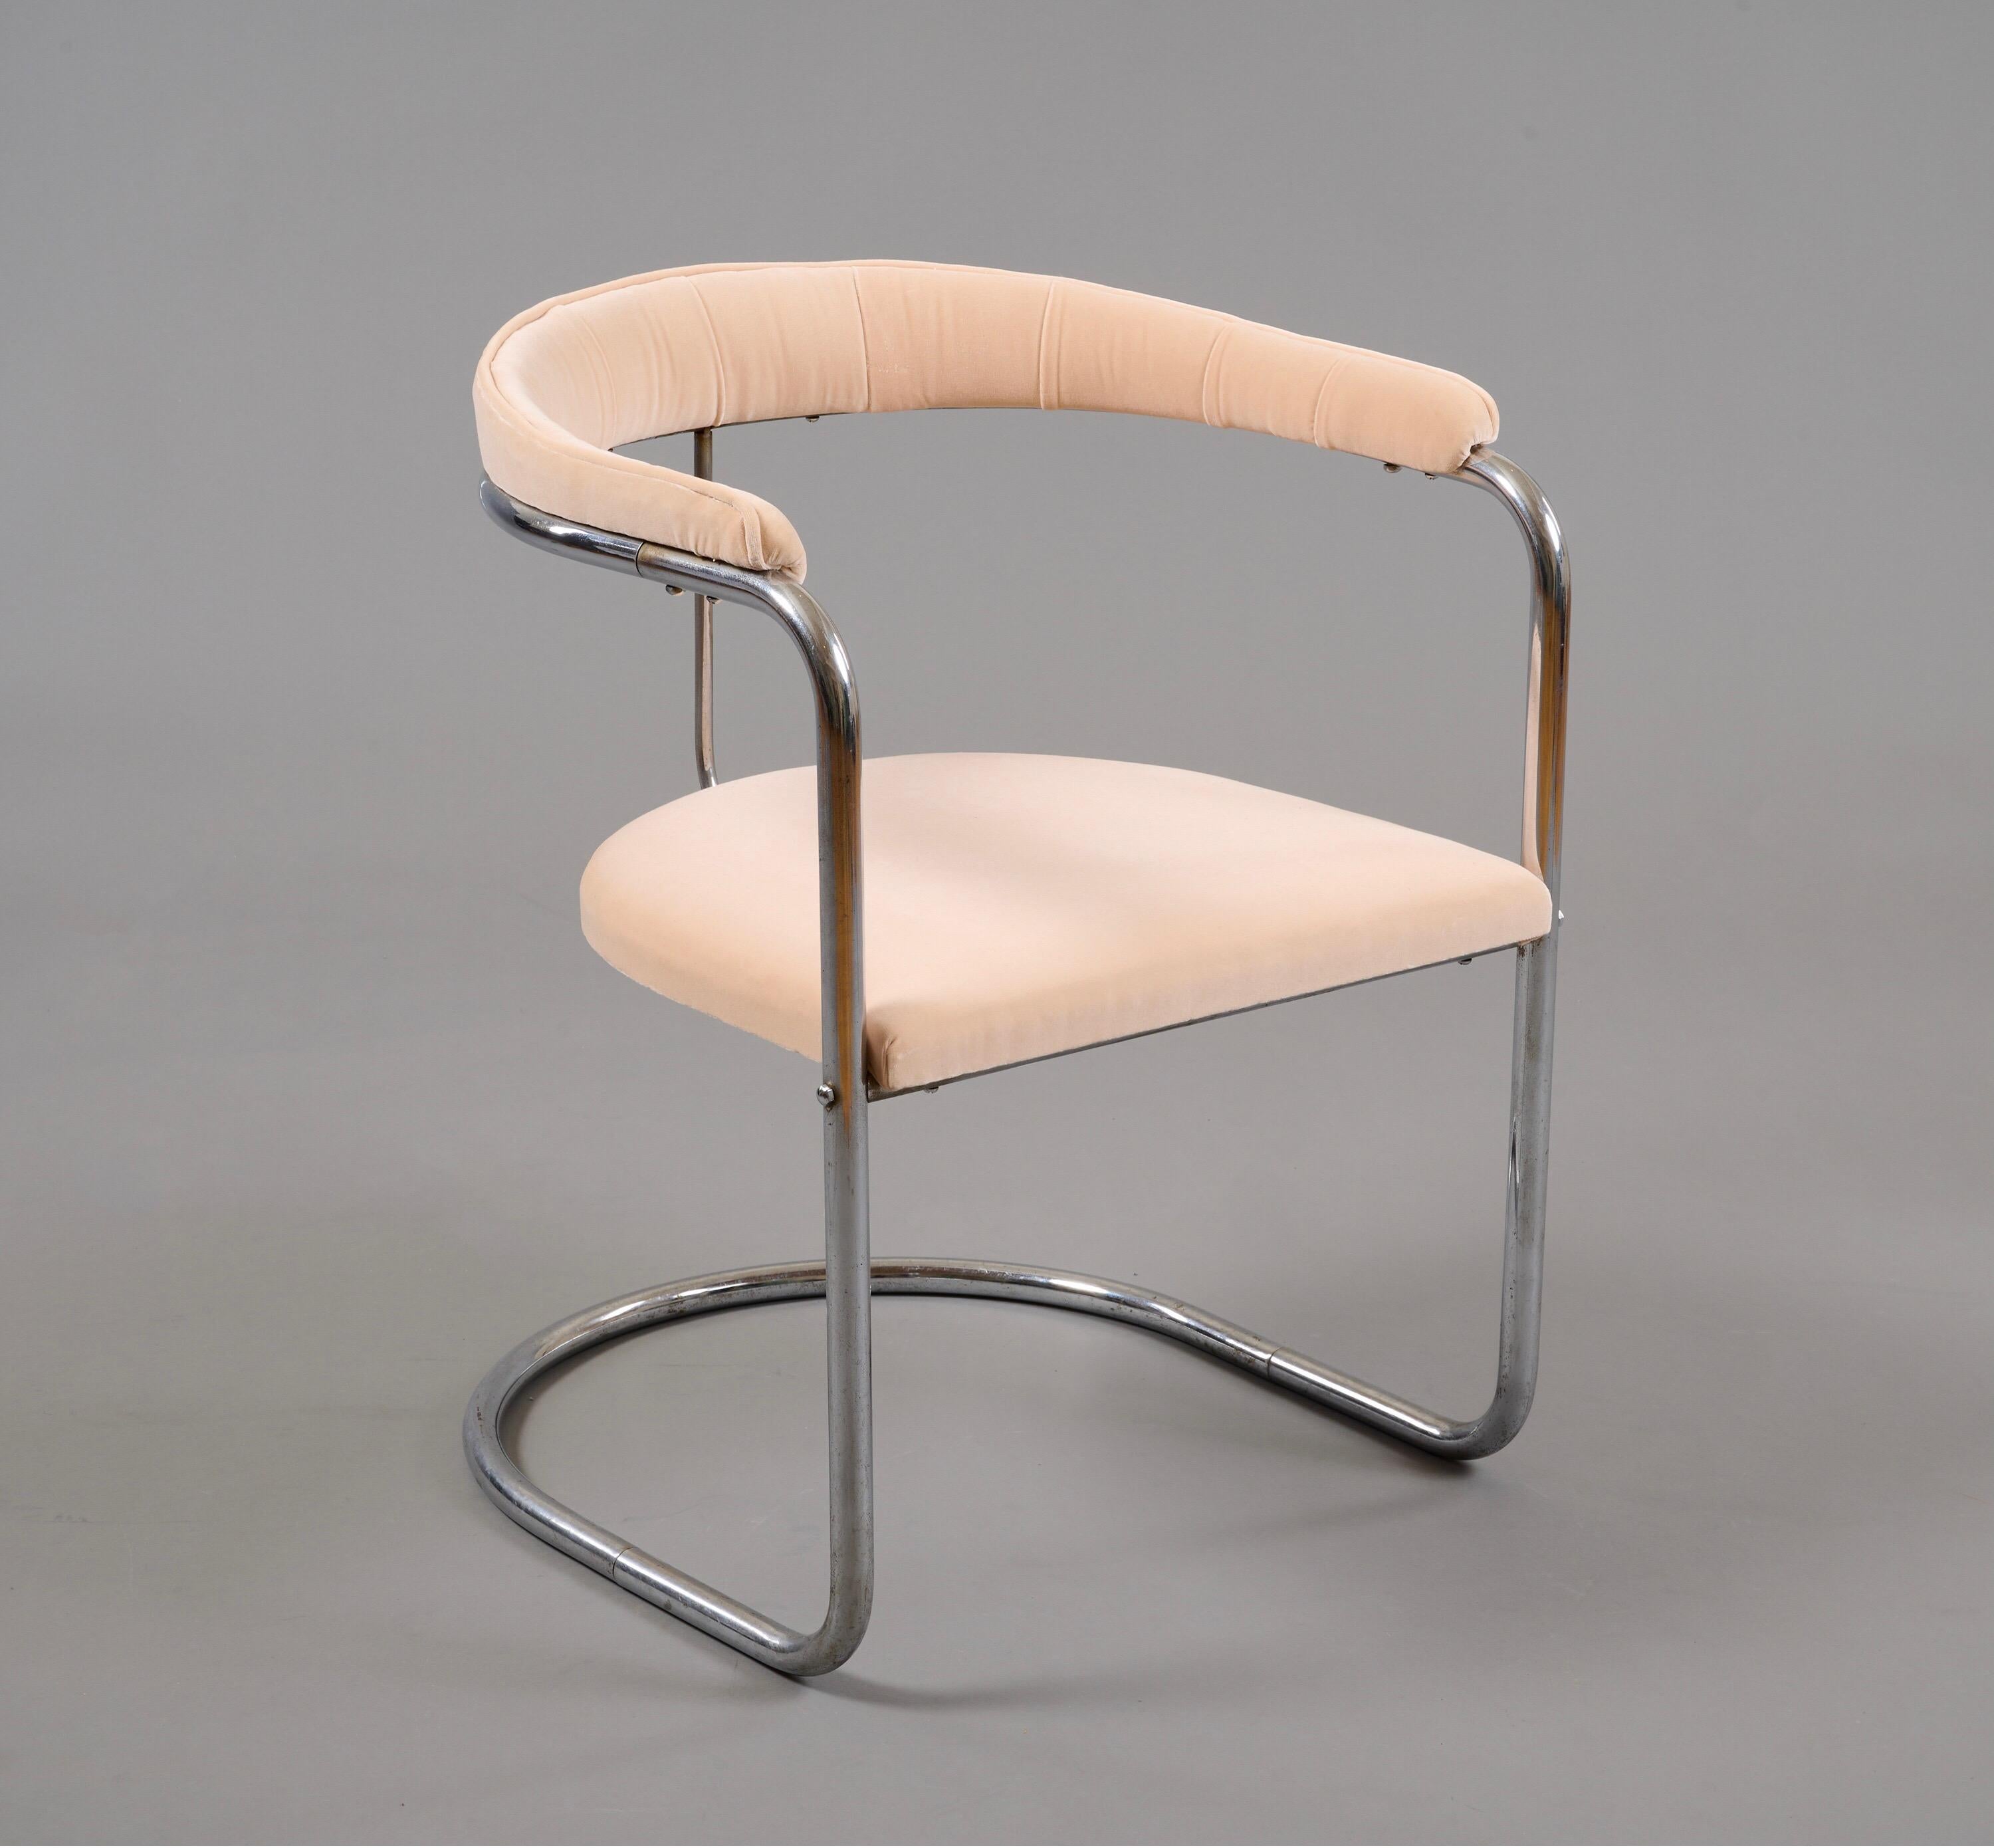 Anton Lorenz (1891-1966)

Zeitloser, früher Freischwinger-Sessel des Bauhaus-Modells SS33 von Anton Lorenz für Thonet, um 1930, aus verchromtem Stahlrohr. Lorenz, der häufig mit Marcel Breuer zusammenarbeitete, war ein Designpionier und zusammen mit